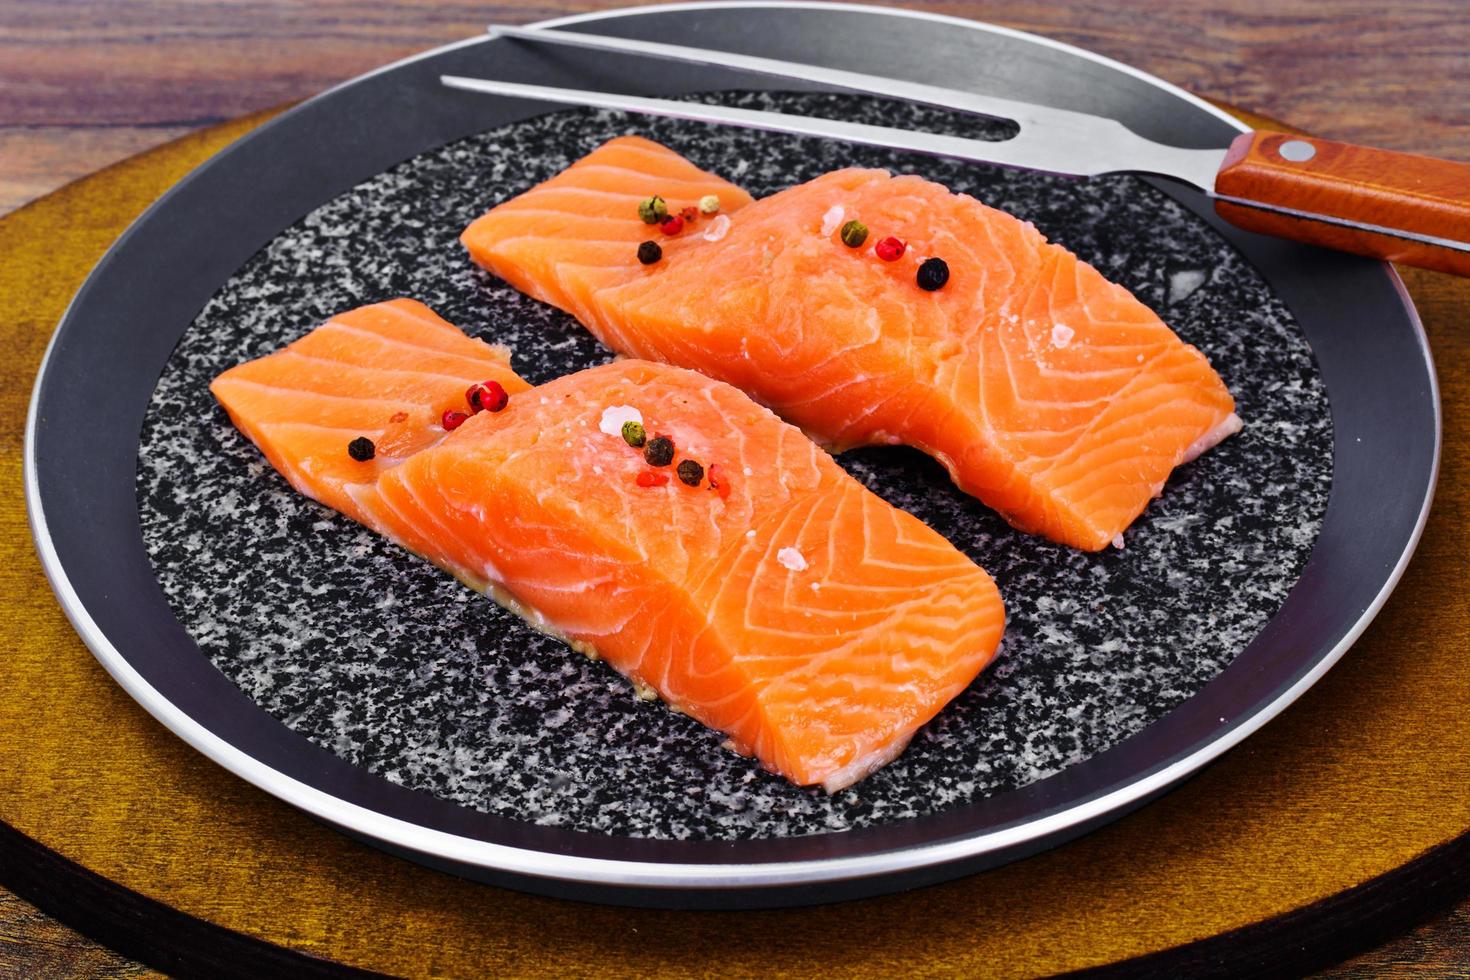 saumon frais sur assiette photo